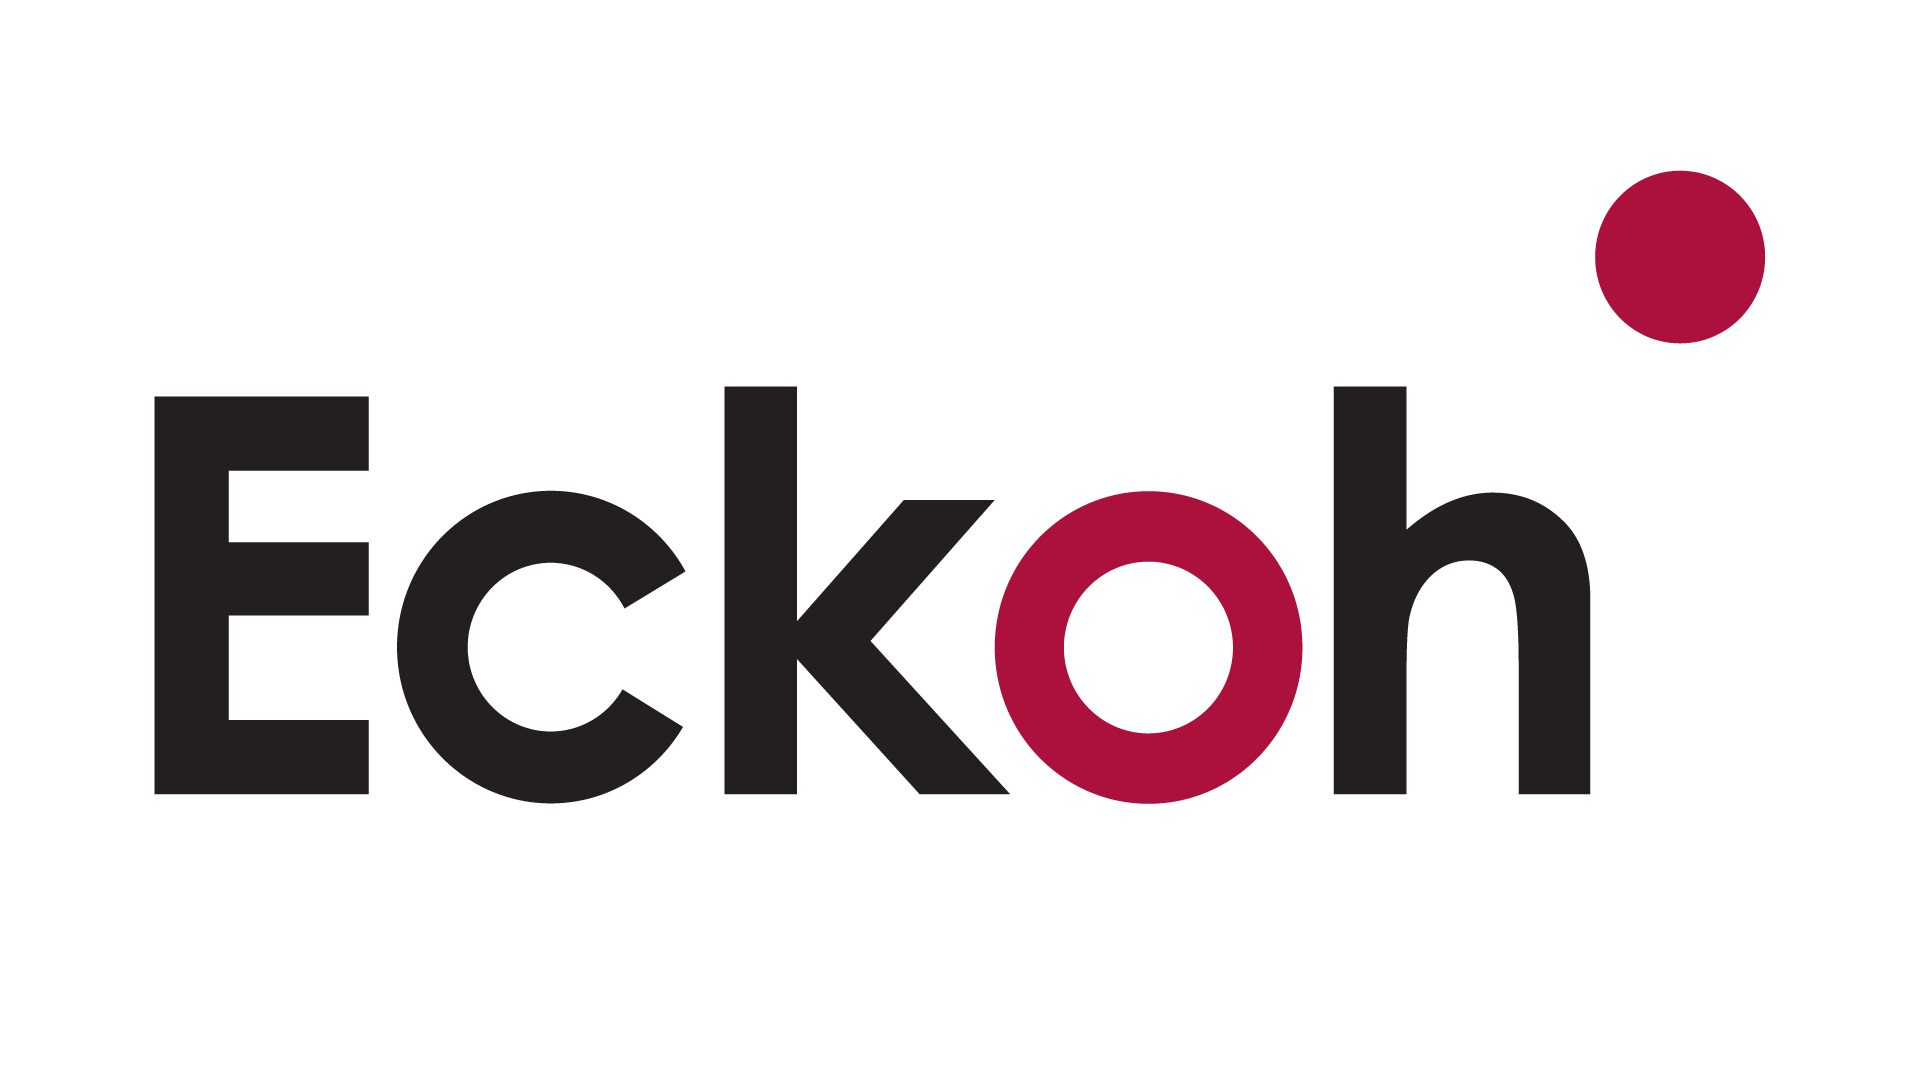 Logo Nonprofit Connect